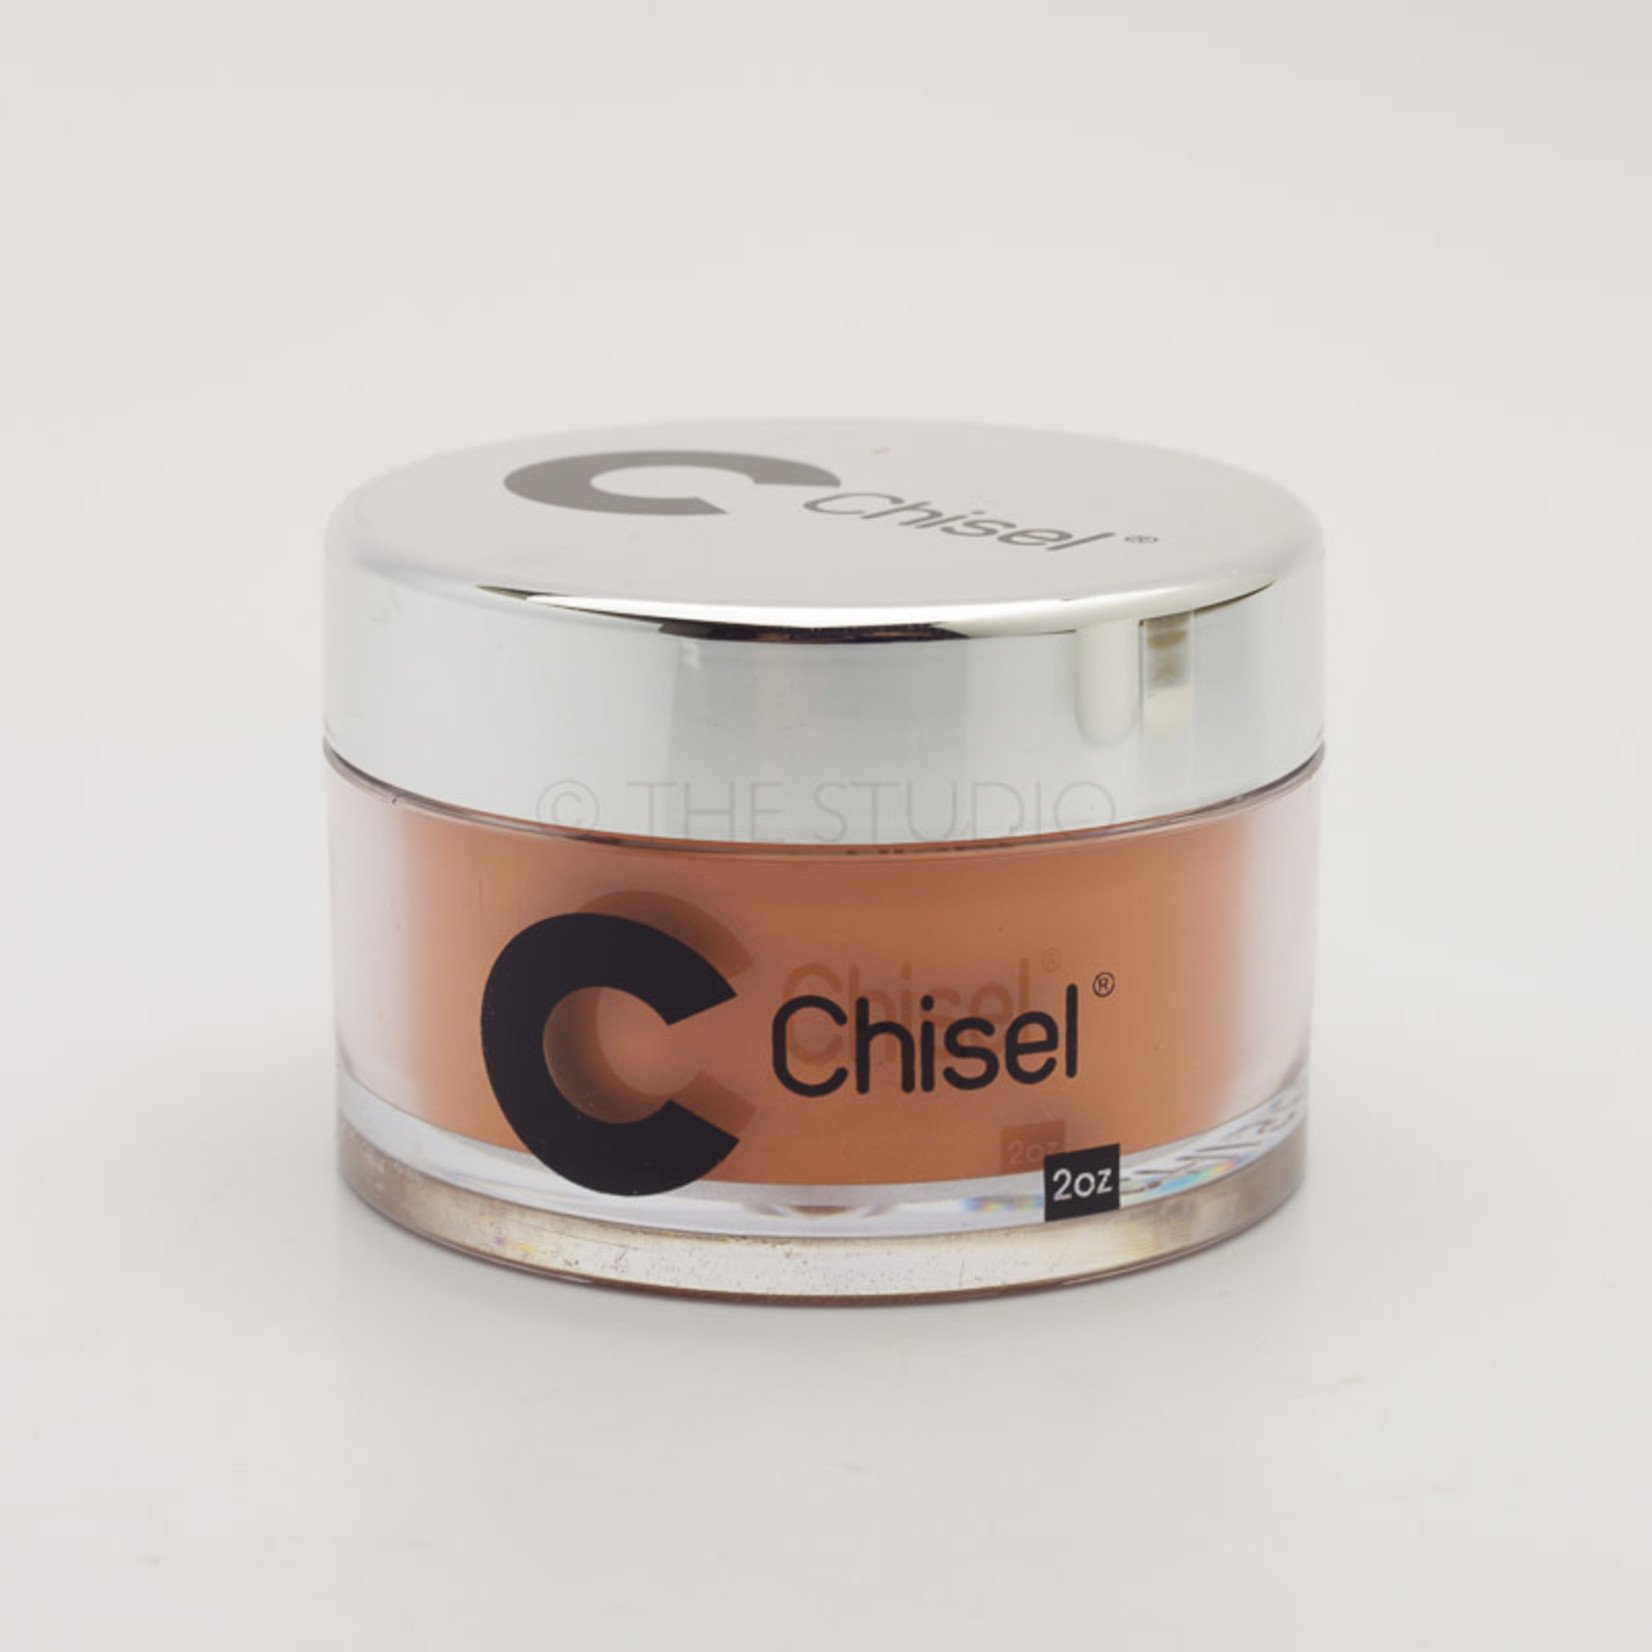 Chisel Chisel - Solid 092 - AIO Powder - 2 oz